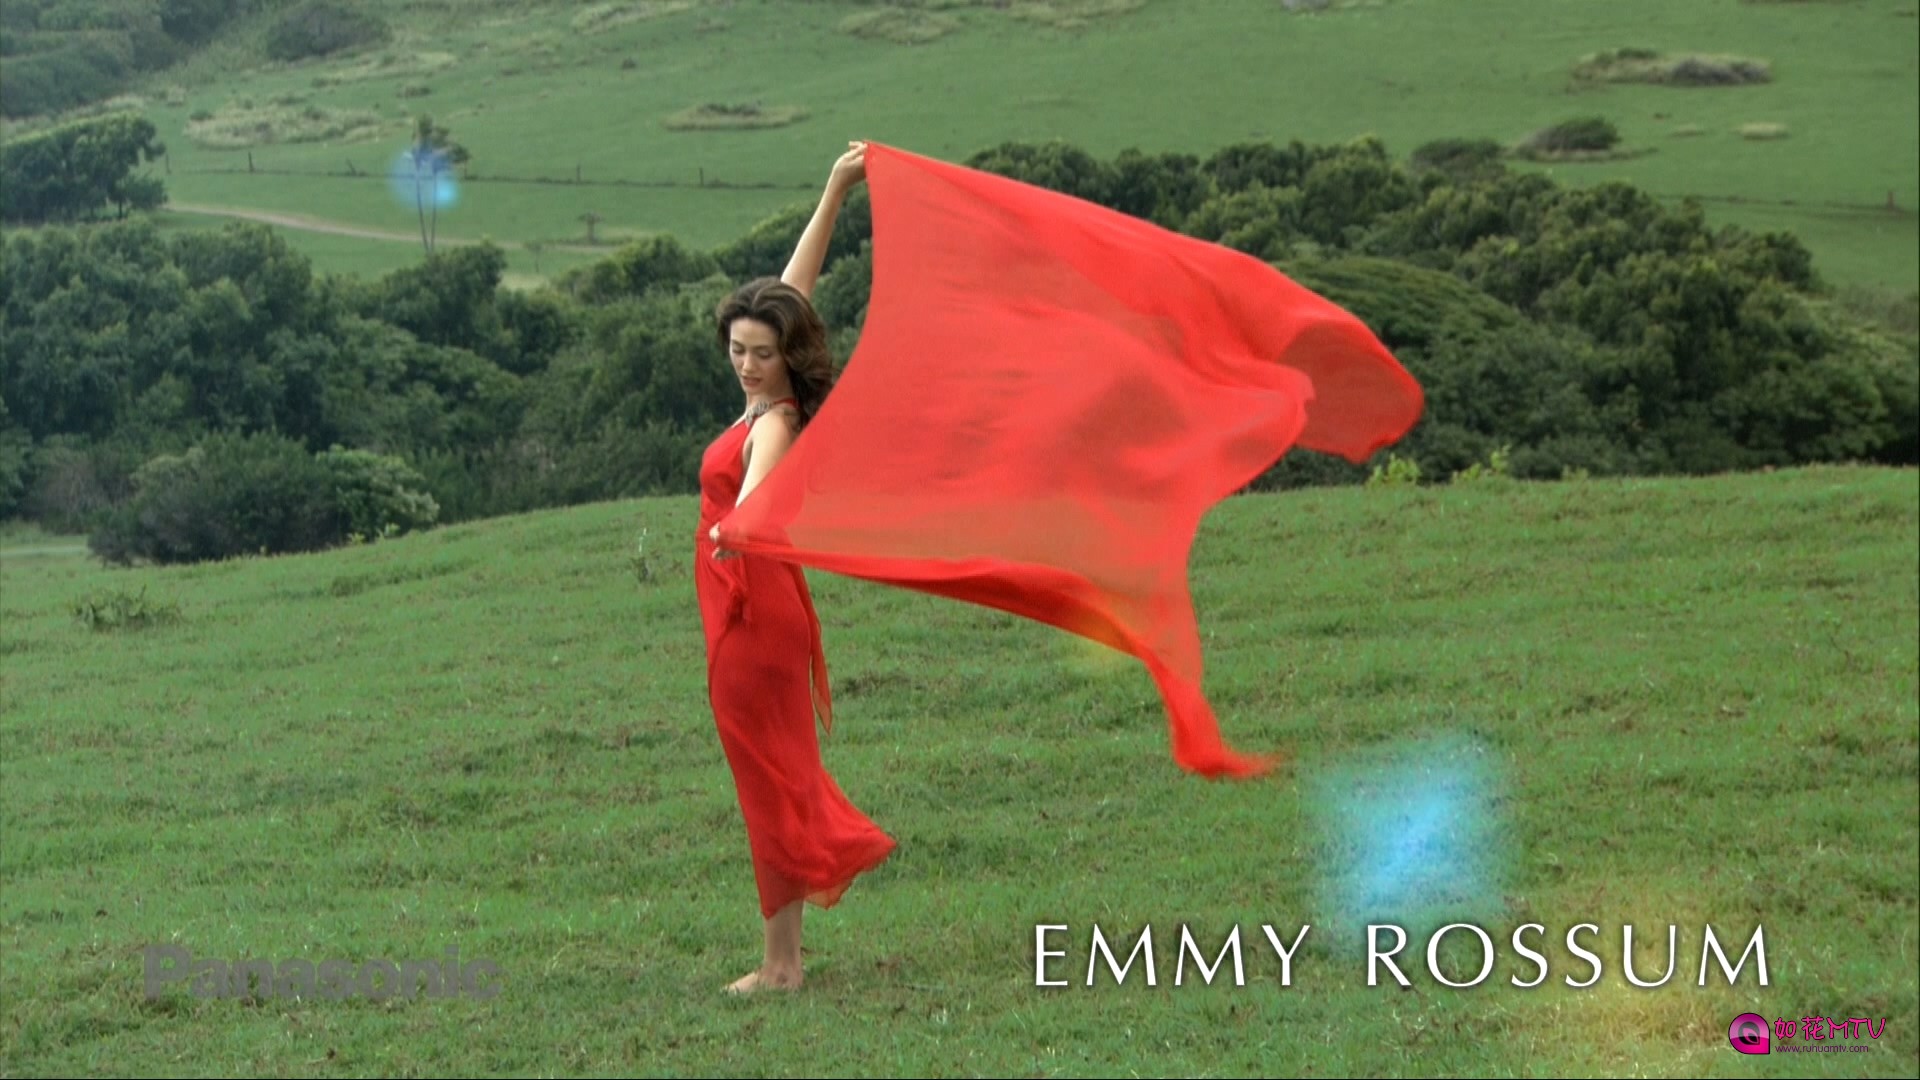 Emmy.Rossum(艾米.罗森) - Deeply.Moving(松下高清演示片).mov_20170501_003134.883.j.jpg